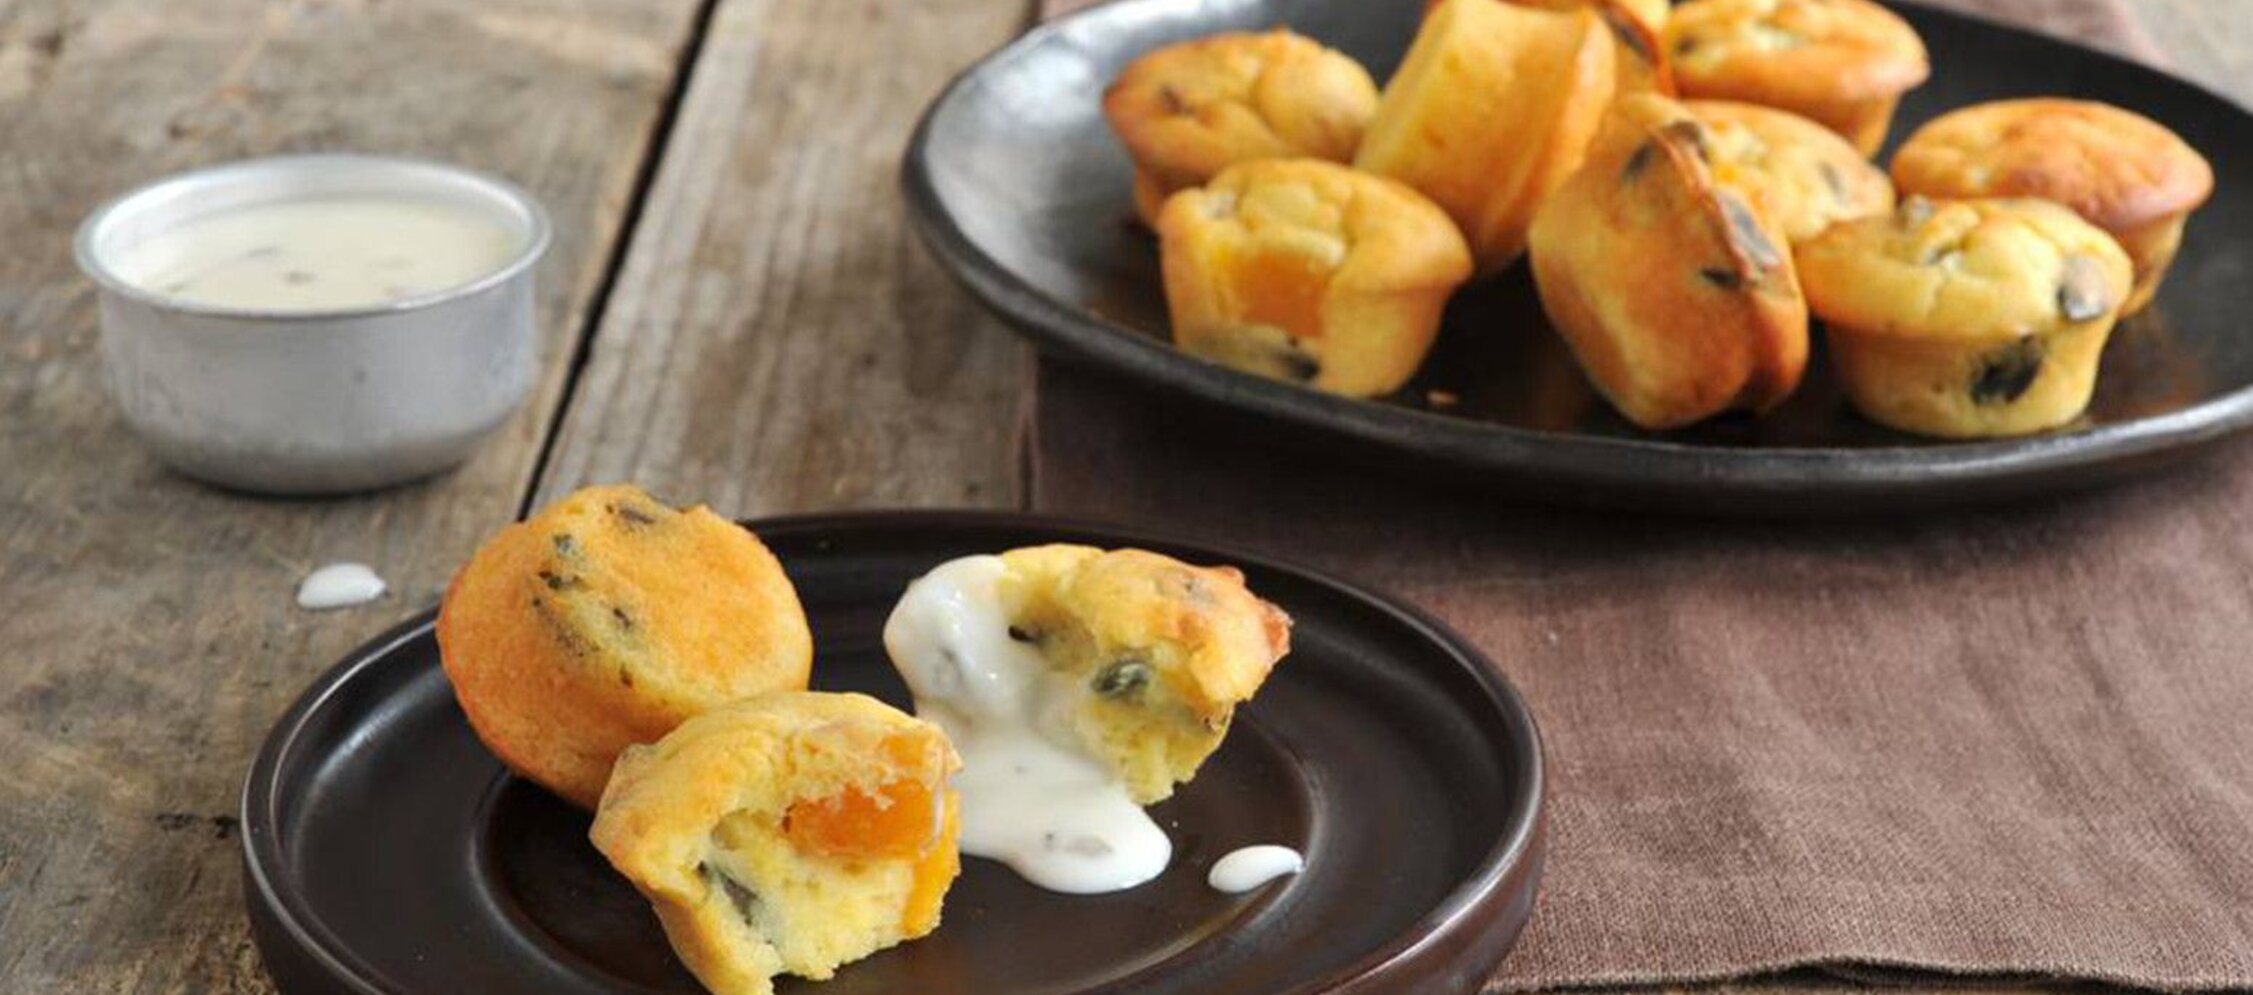 Rezept Kürbis-Feta Muffins mit Joghurt-Dip